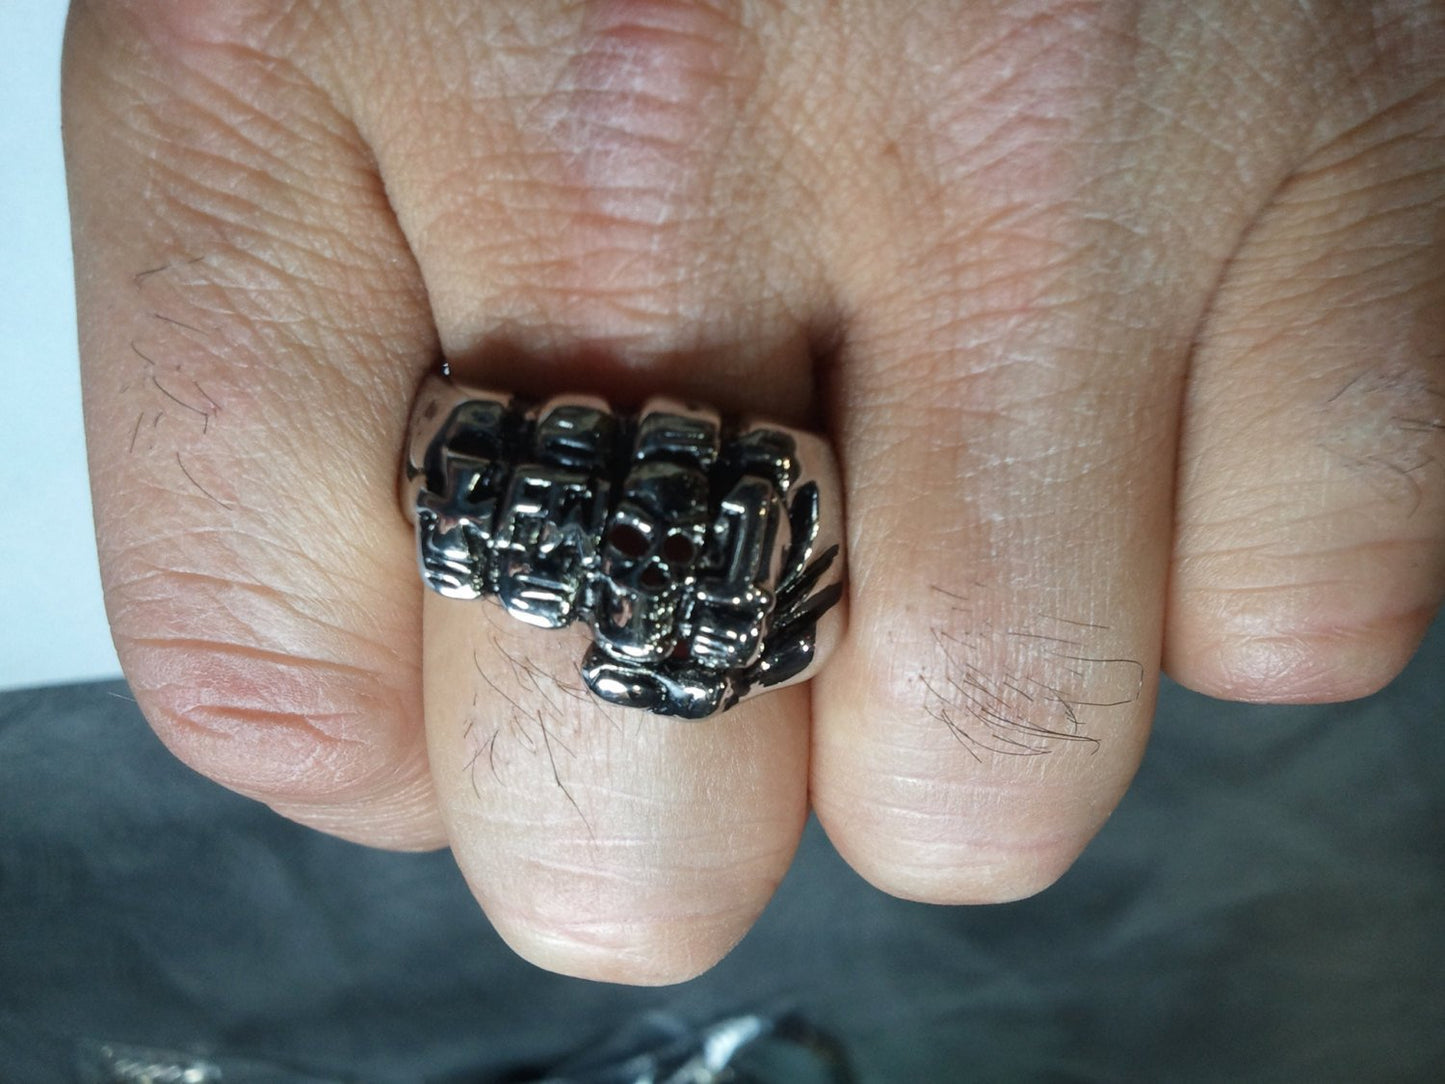 Biker Fist Skull FTW Ring. 925 Sterling Silver Ring.-UDINC0066